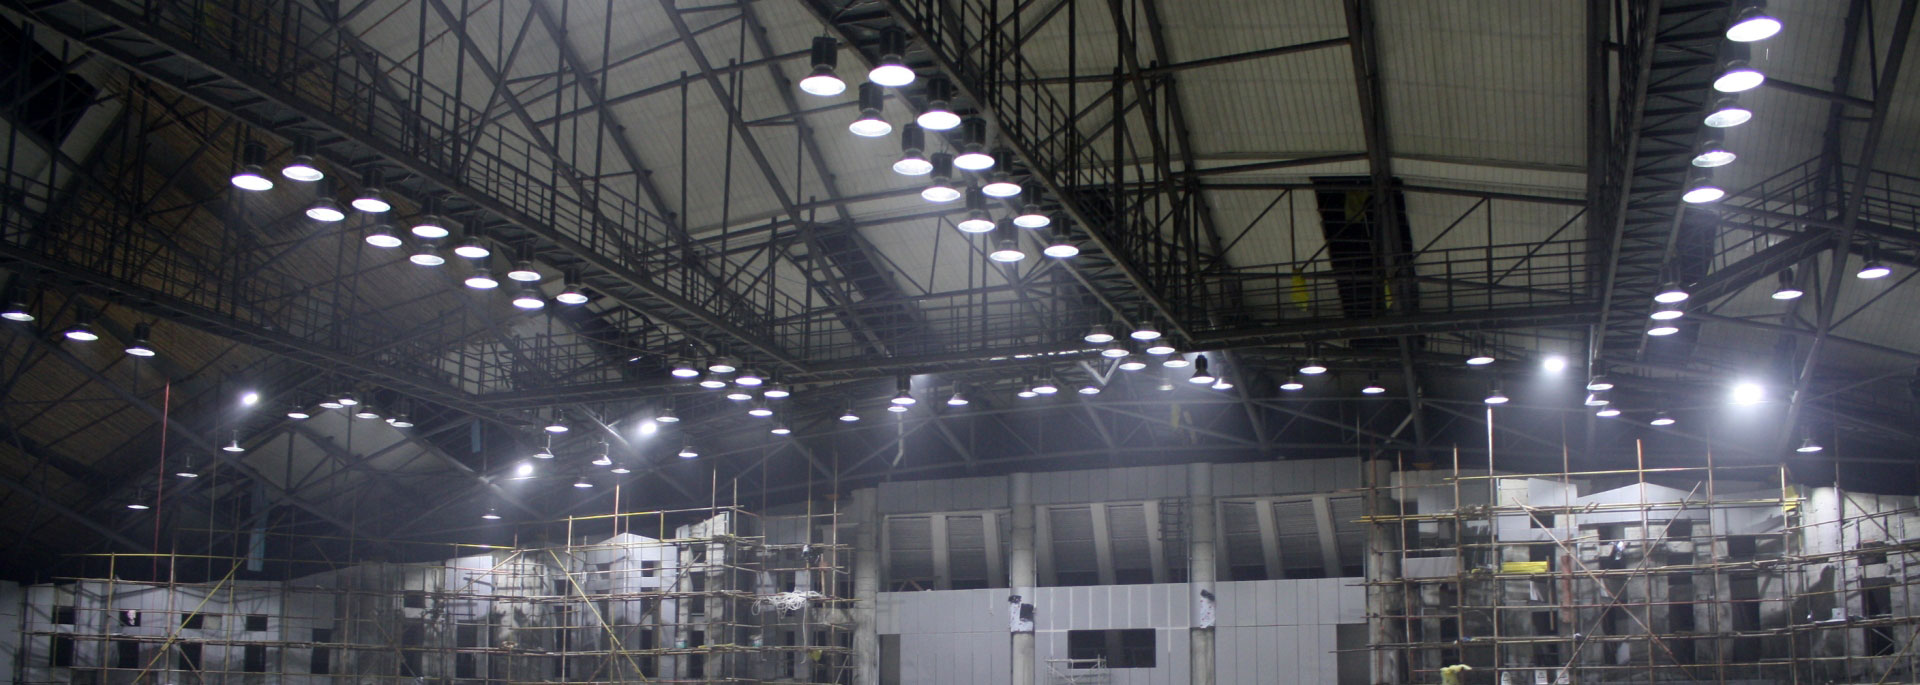 Đèn LED Highbay chiếu sáng nhà xưởng được lắp đặt những tại những công trình cần ánh sáng mạnh